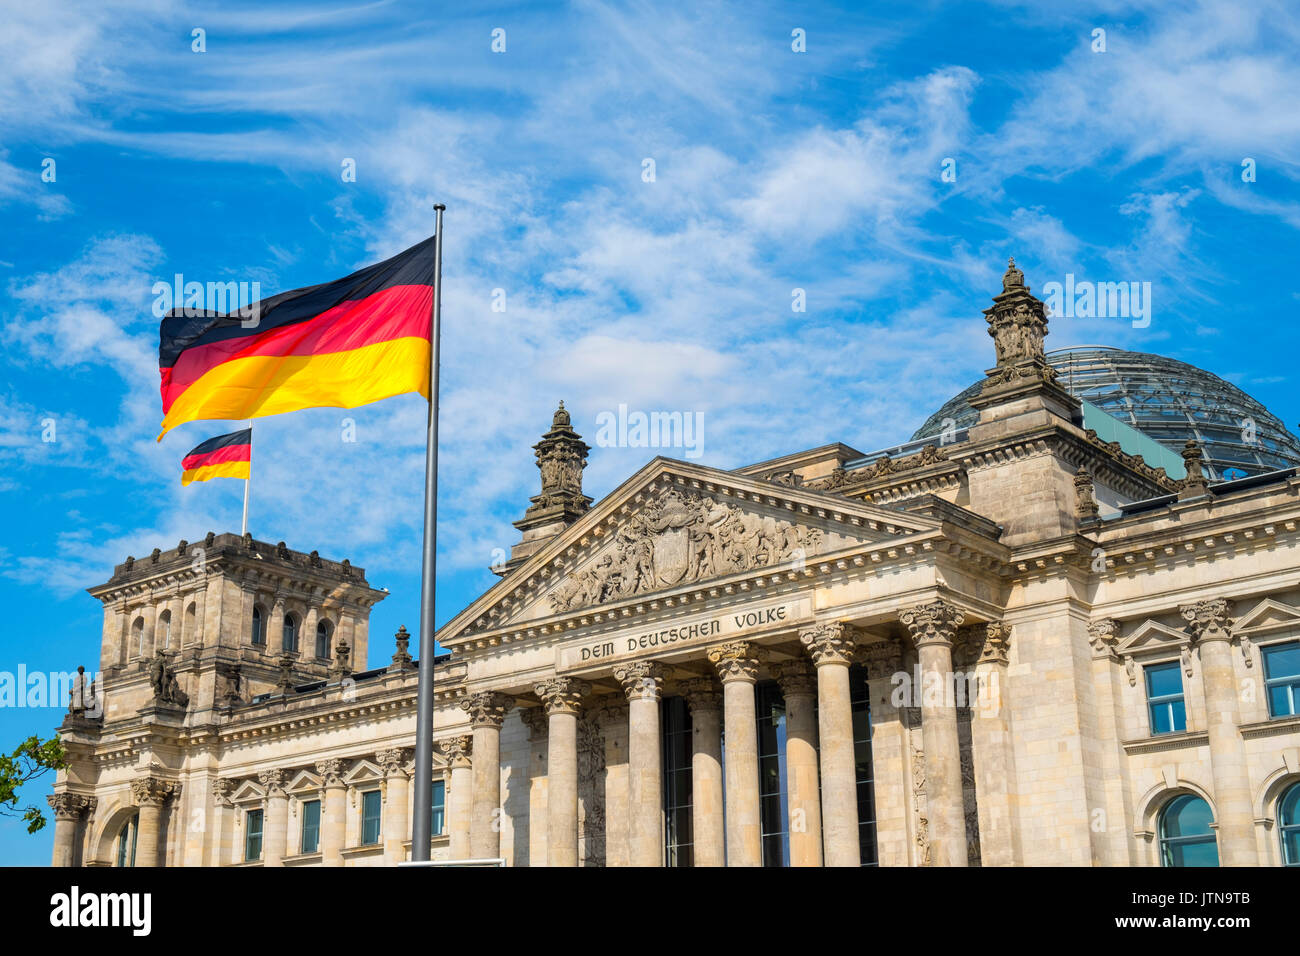 El edificio del parlamento Reichstag alemán en Berlín, Alemania Foto de stock